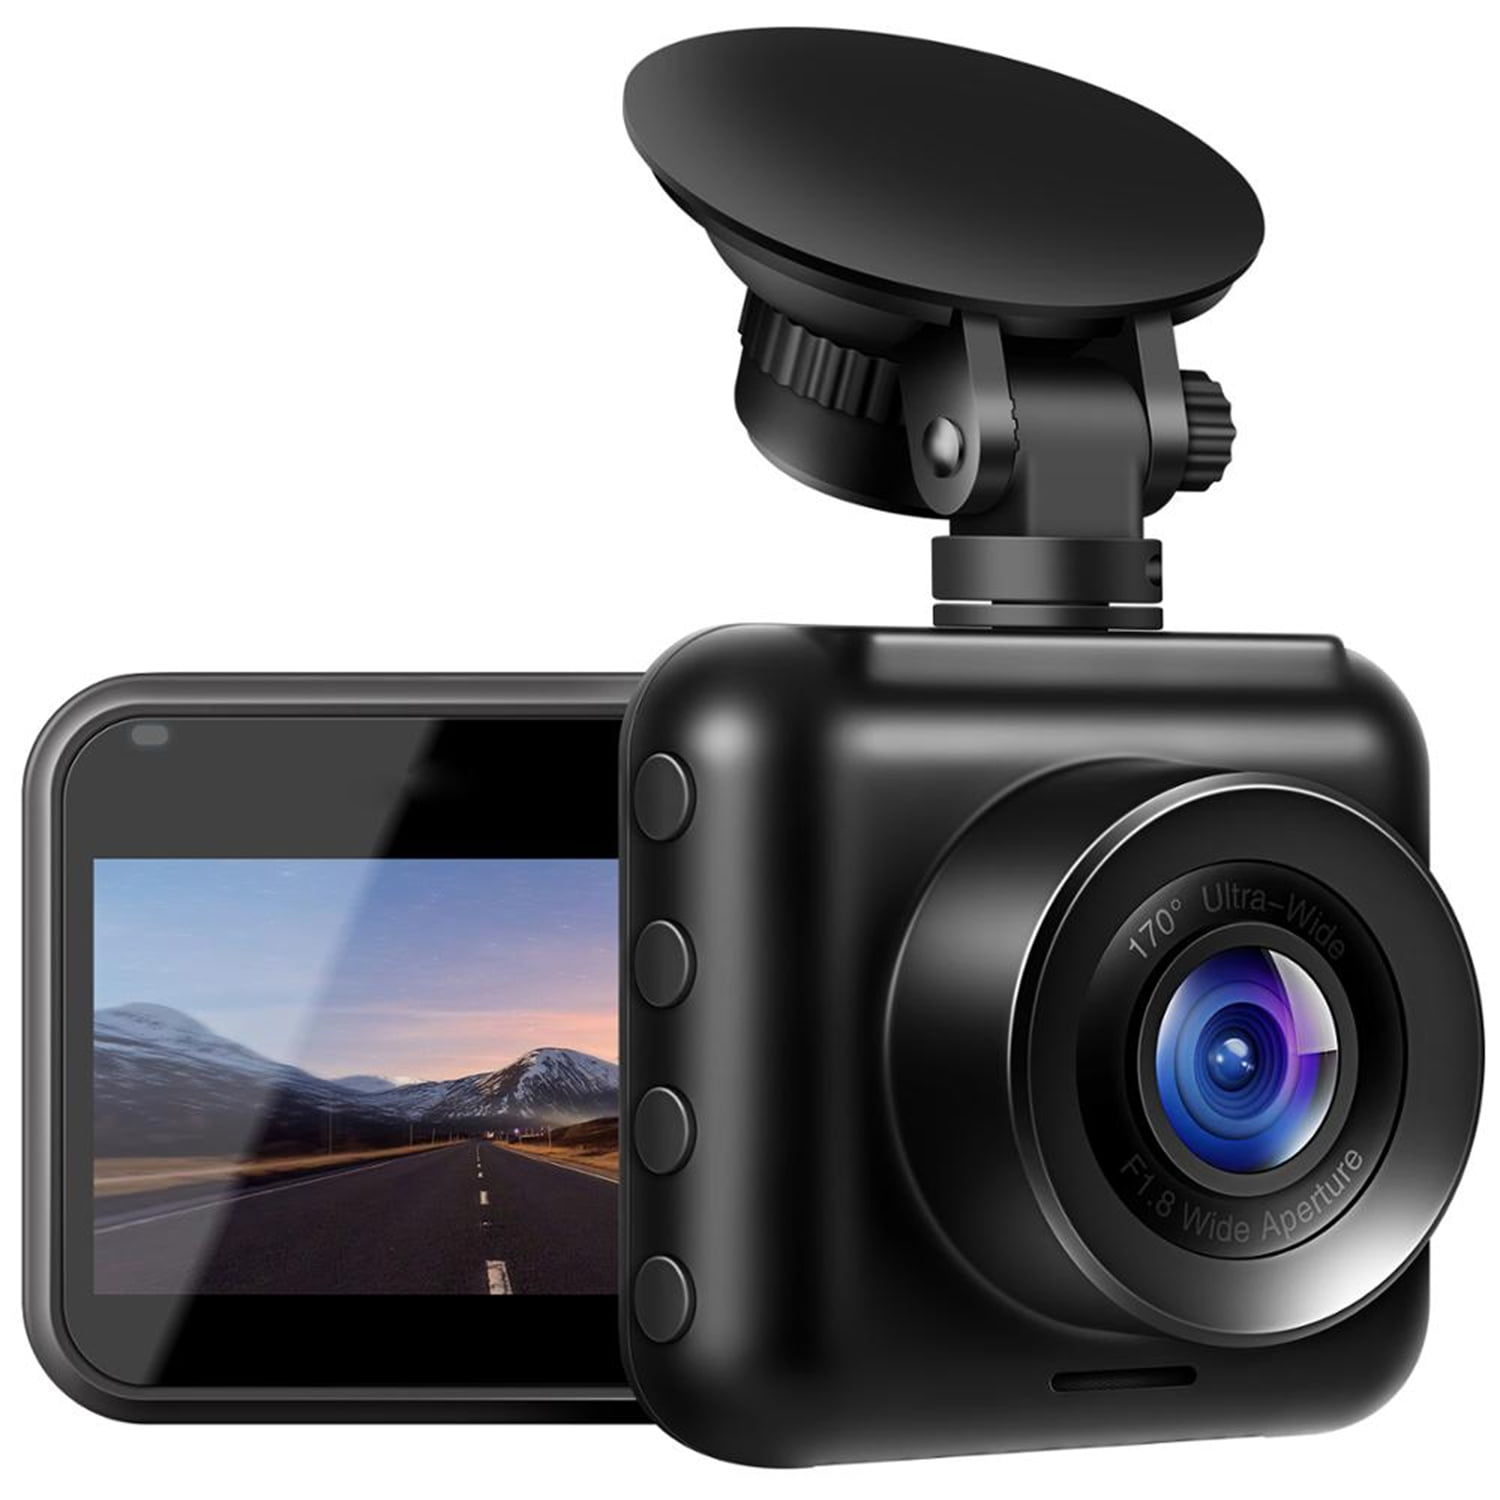 Mini Dash Cam FHD 1080P Telecamera per Auto con Obiettivo Grandangolare di 170° Super-Condensatore WDR Visione Notturna Dashcam,Videocamera Auto-Registrazione in Loop,G-Sensor 